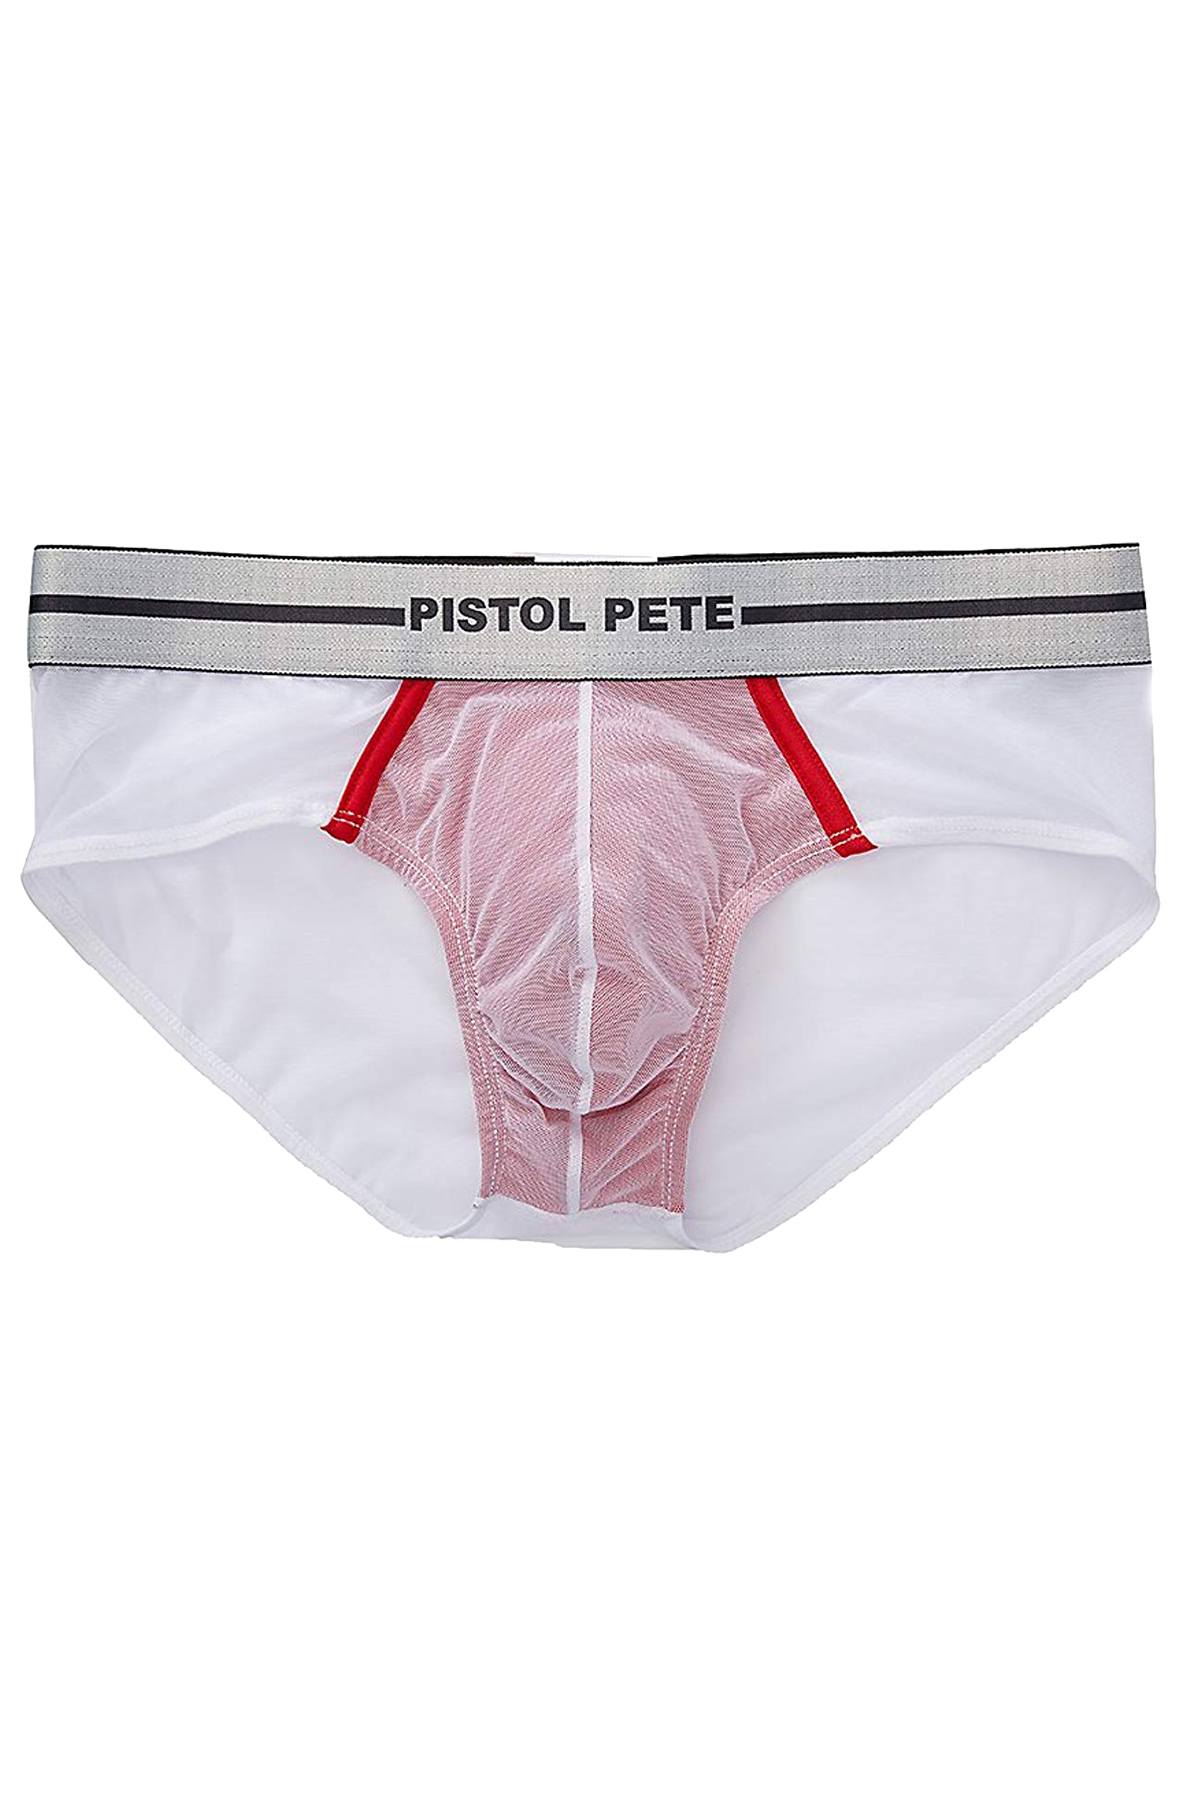 Pistol Pete White/Red Mesh Bikini Brief